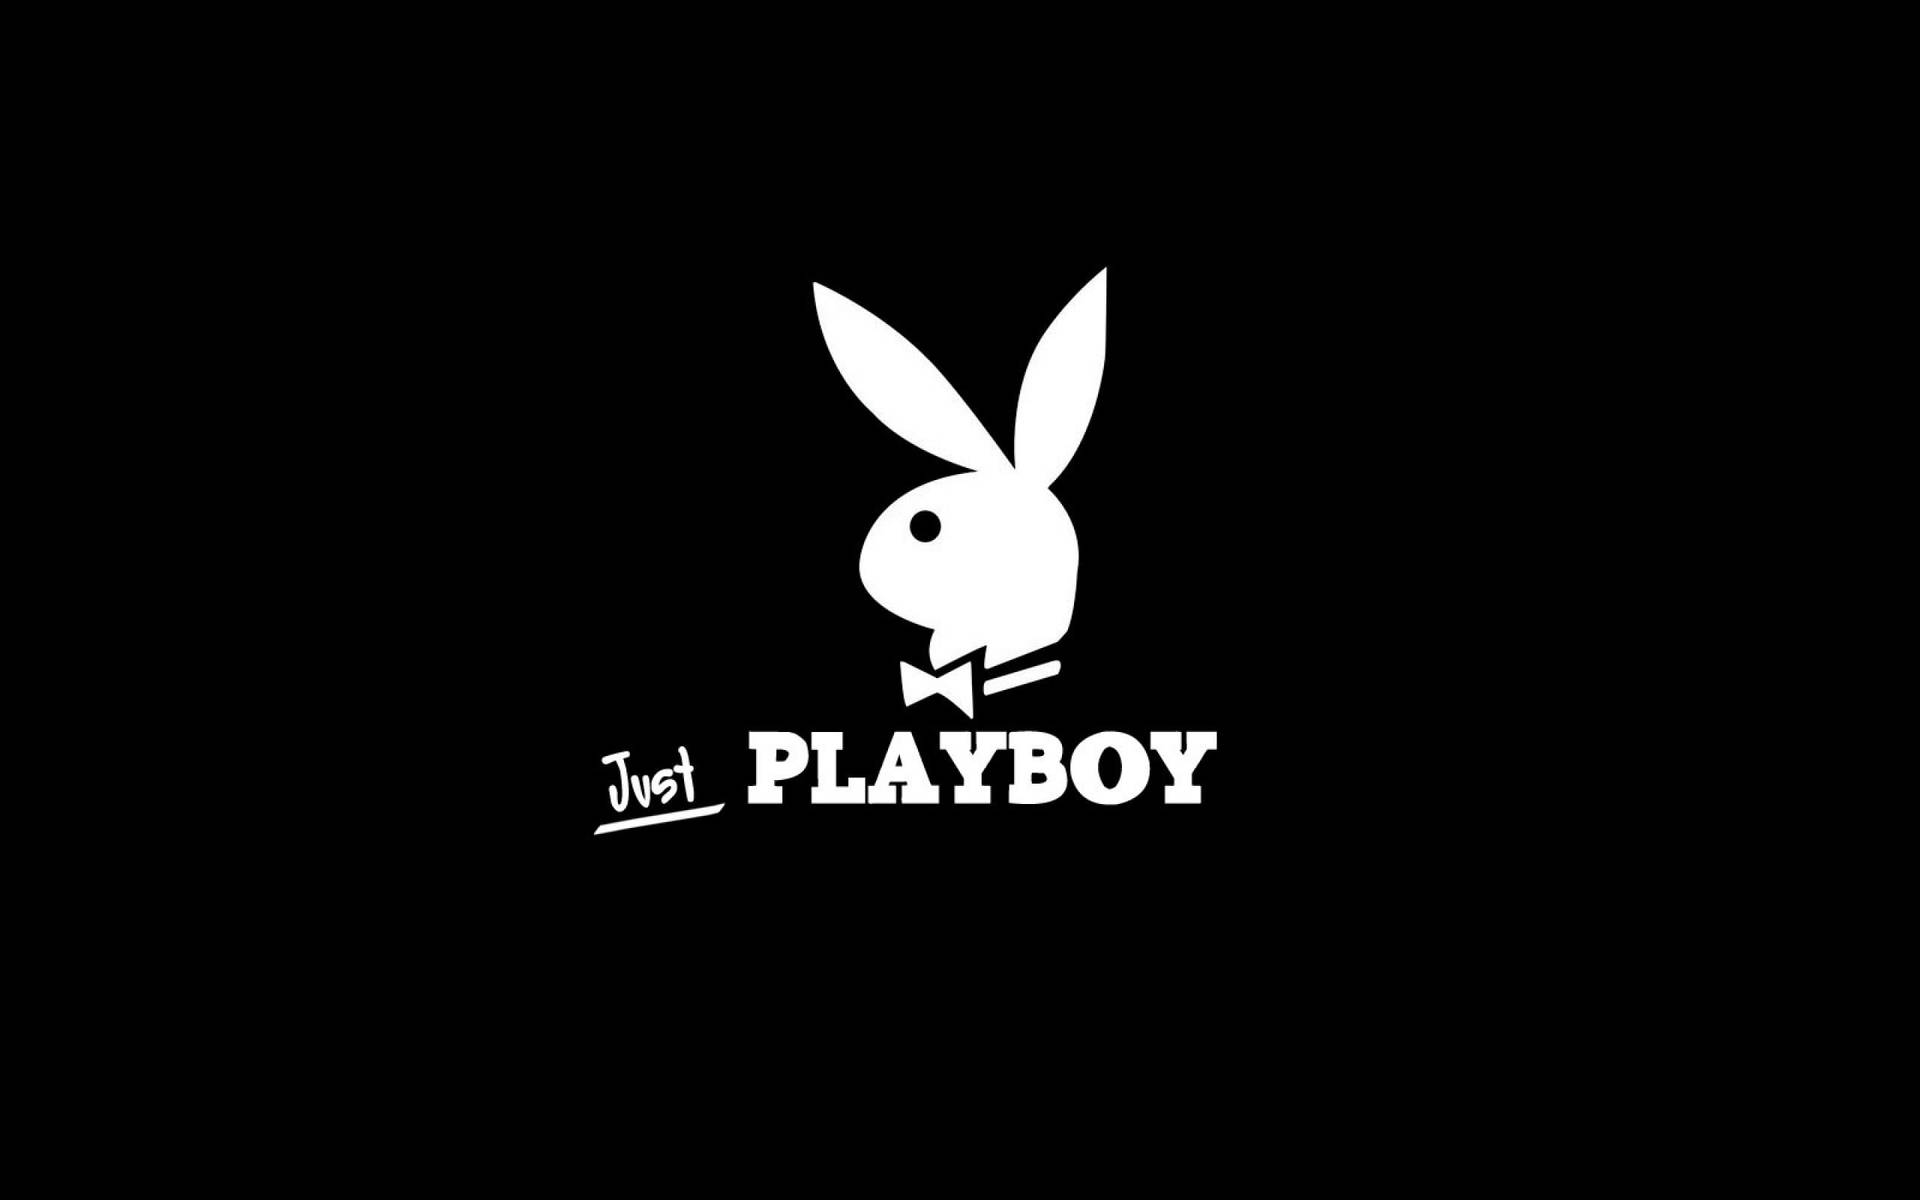 Hvid Playboy Logo Wallpaper